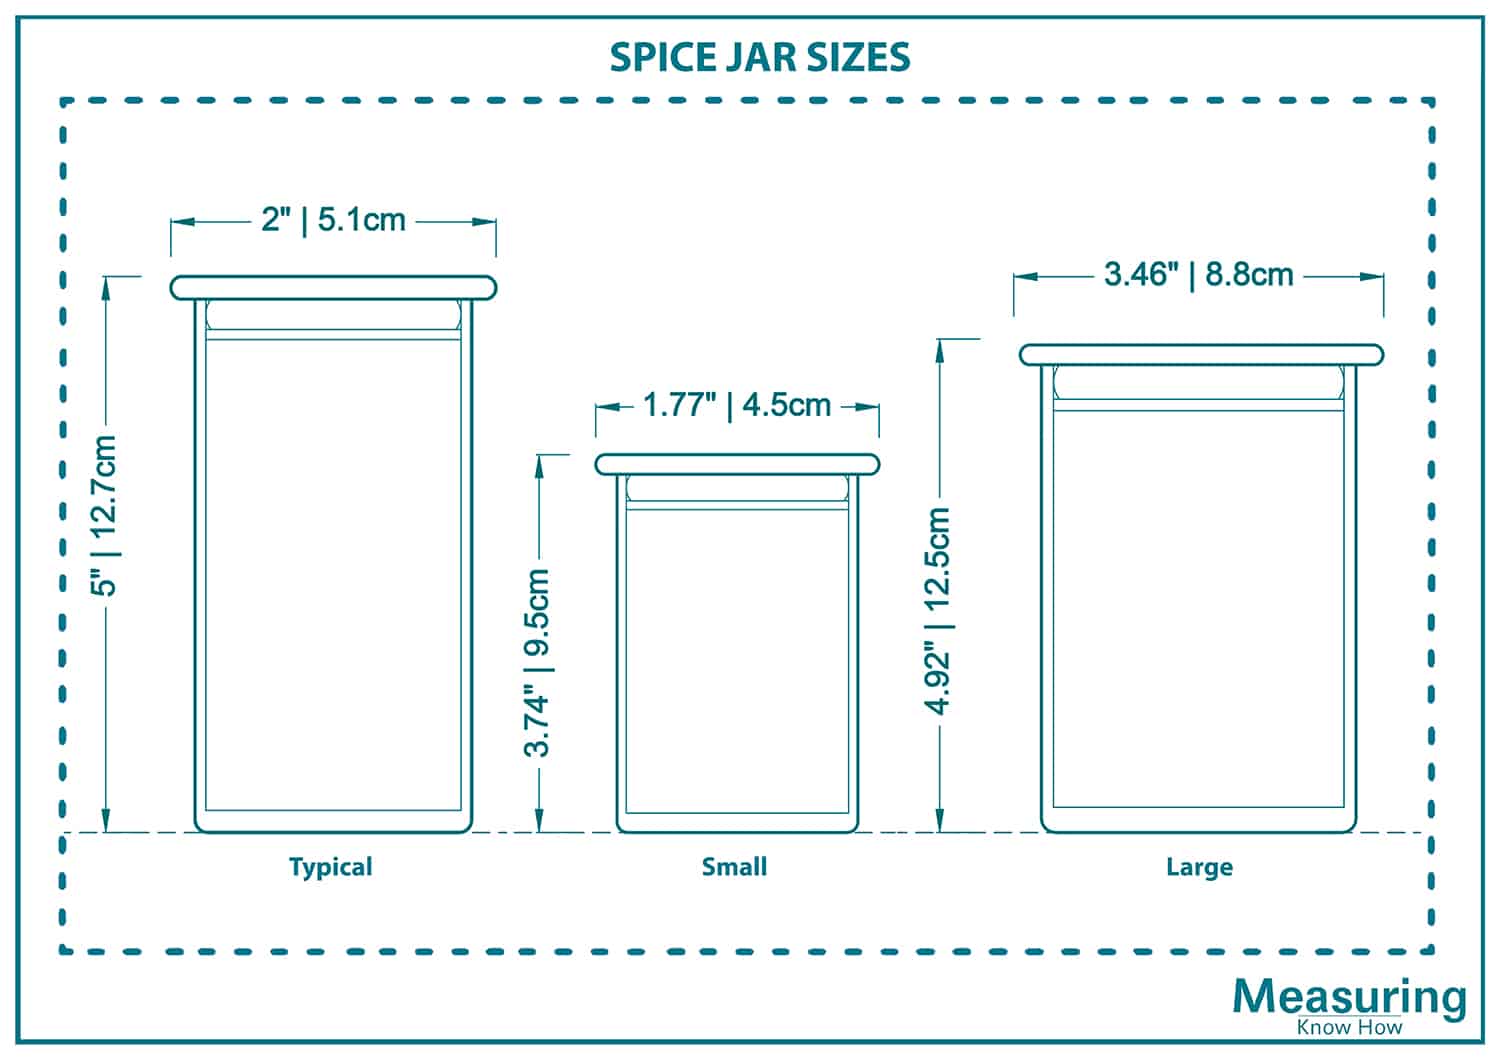 Spice jar sizes